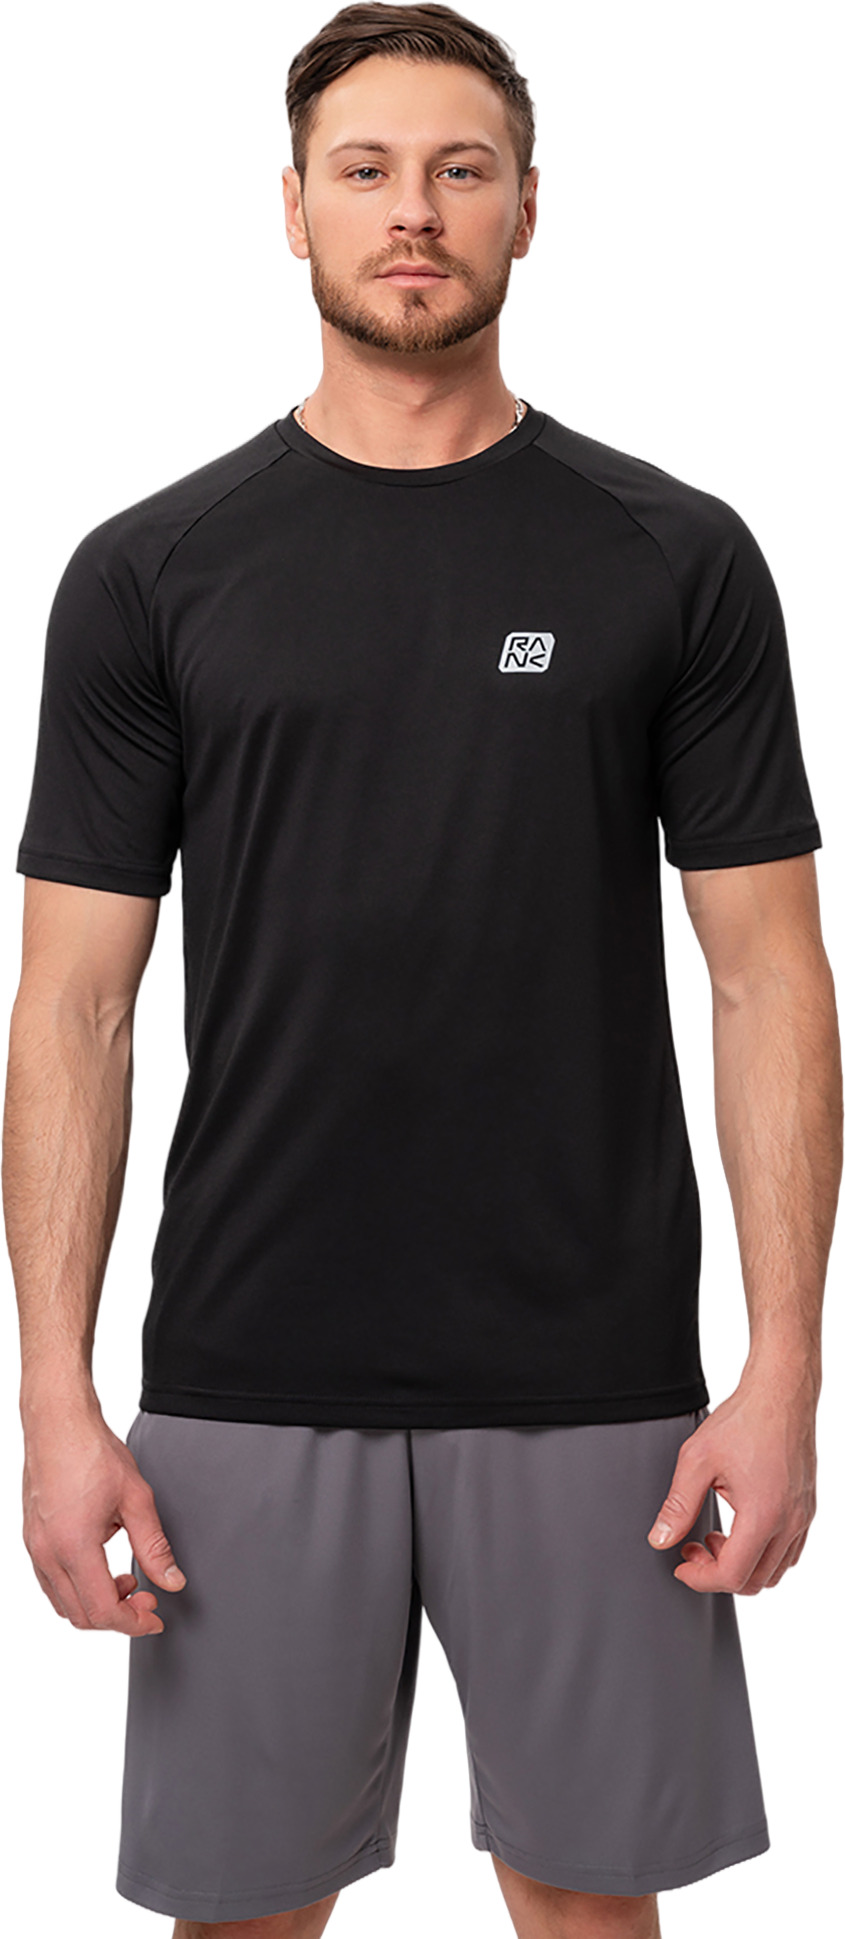 Футболка мужская RANK Train T-shirt черная L